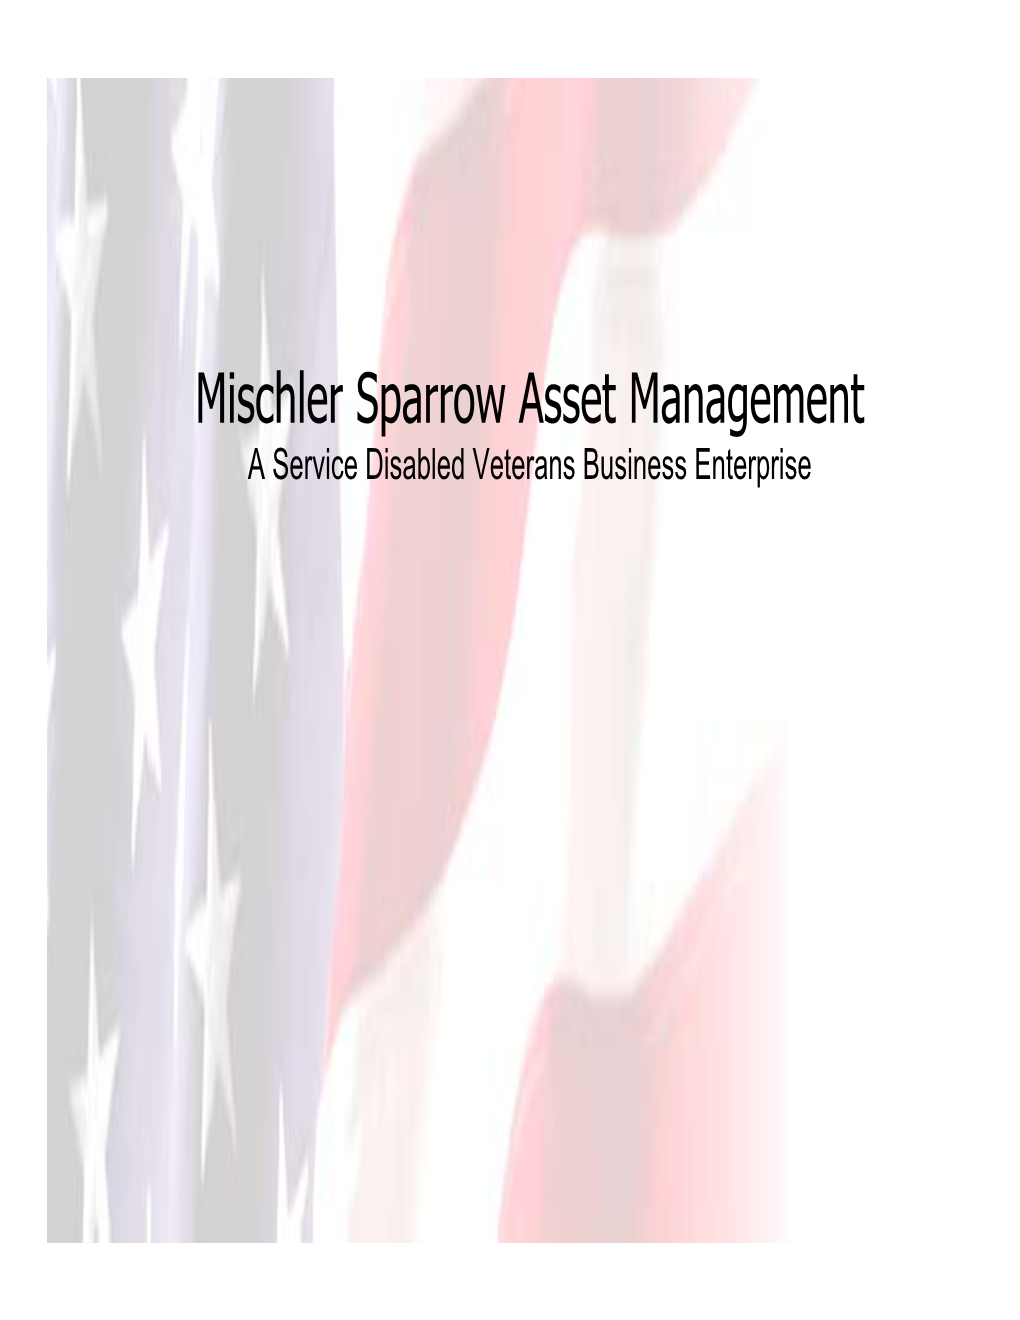 Mischler Sparrow Asset Management a Service Disabled Veterans Business Enterprise Introduction to Mischler Sparrow Asset Management